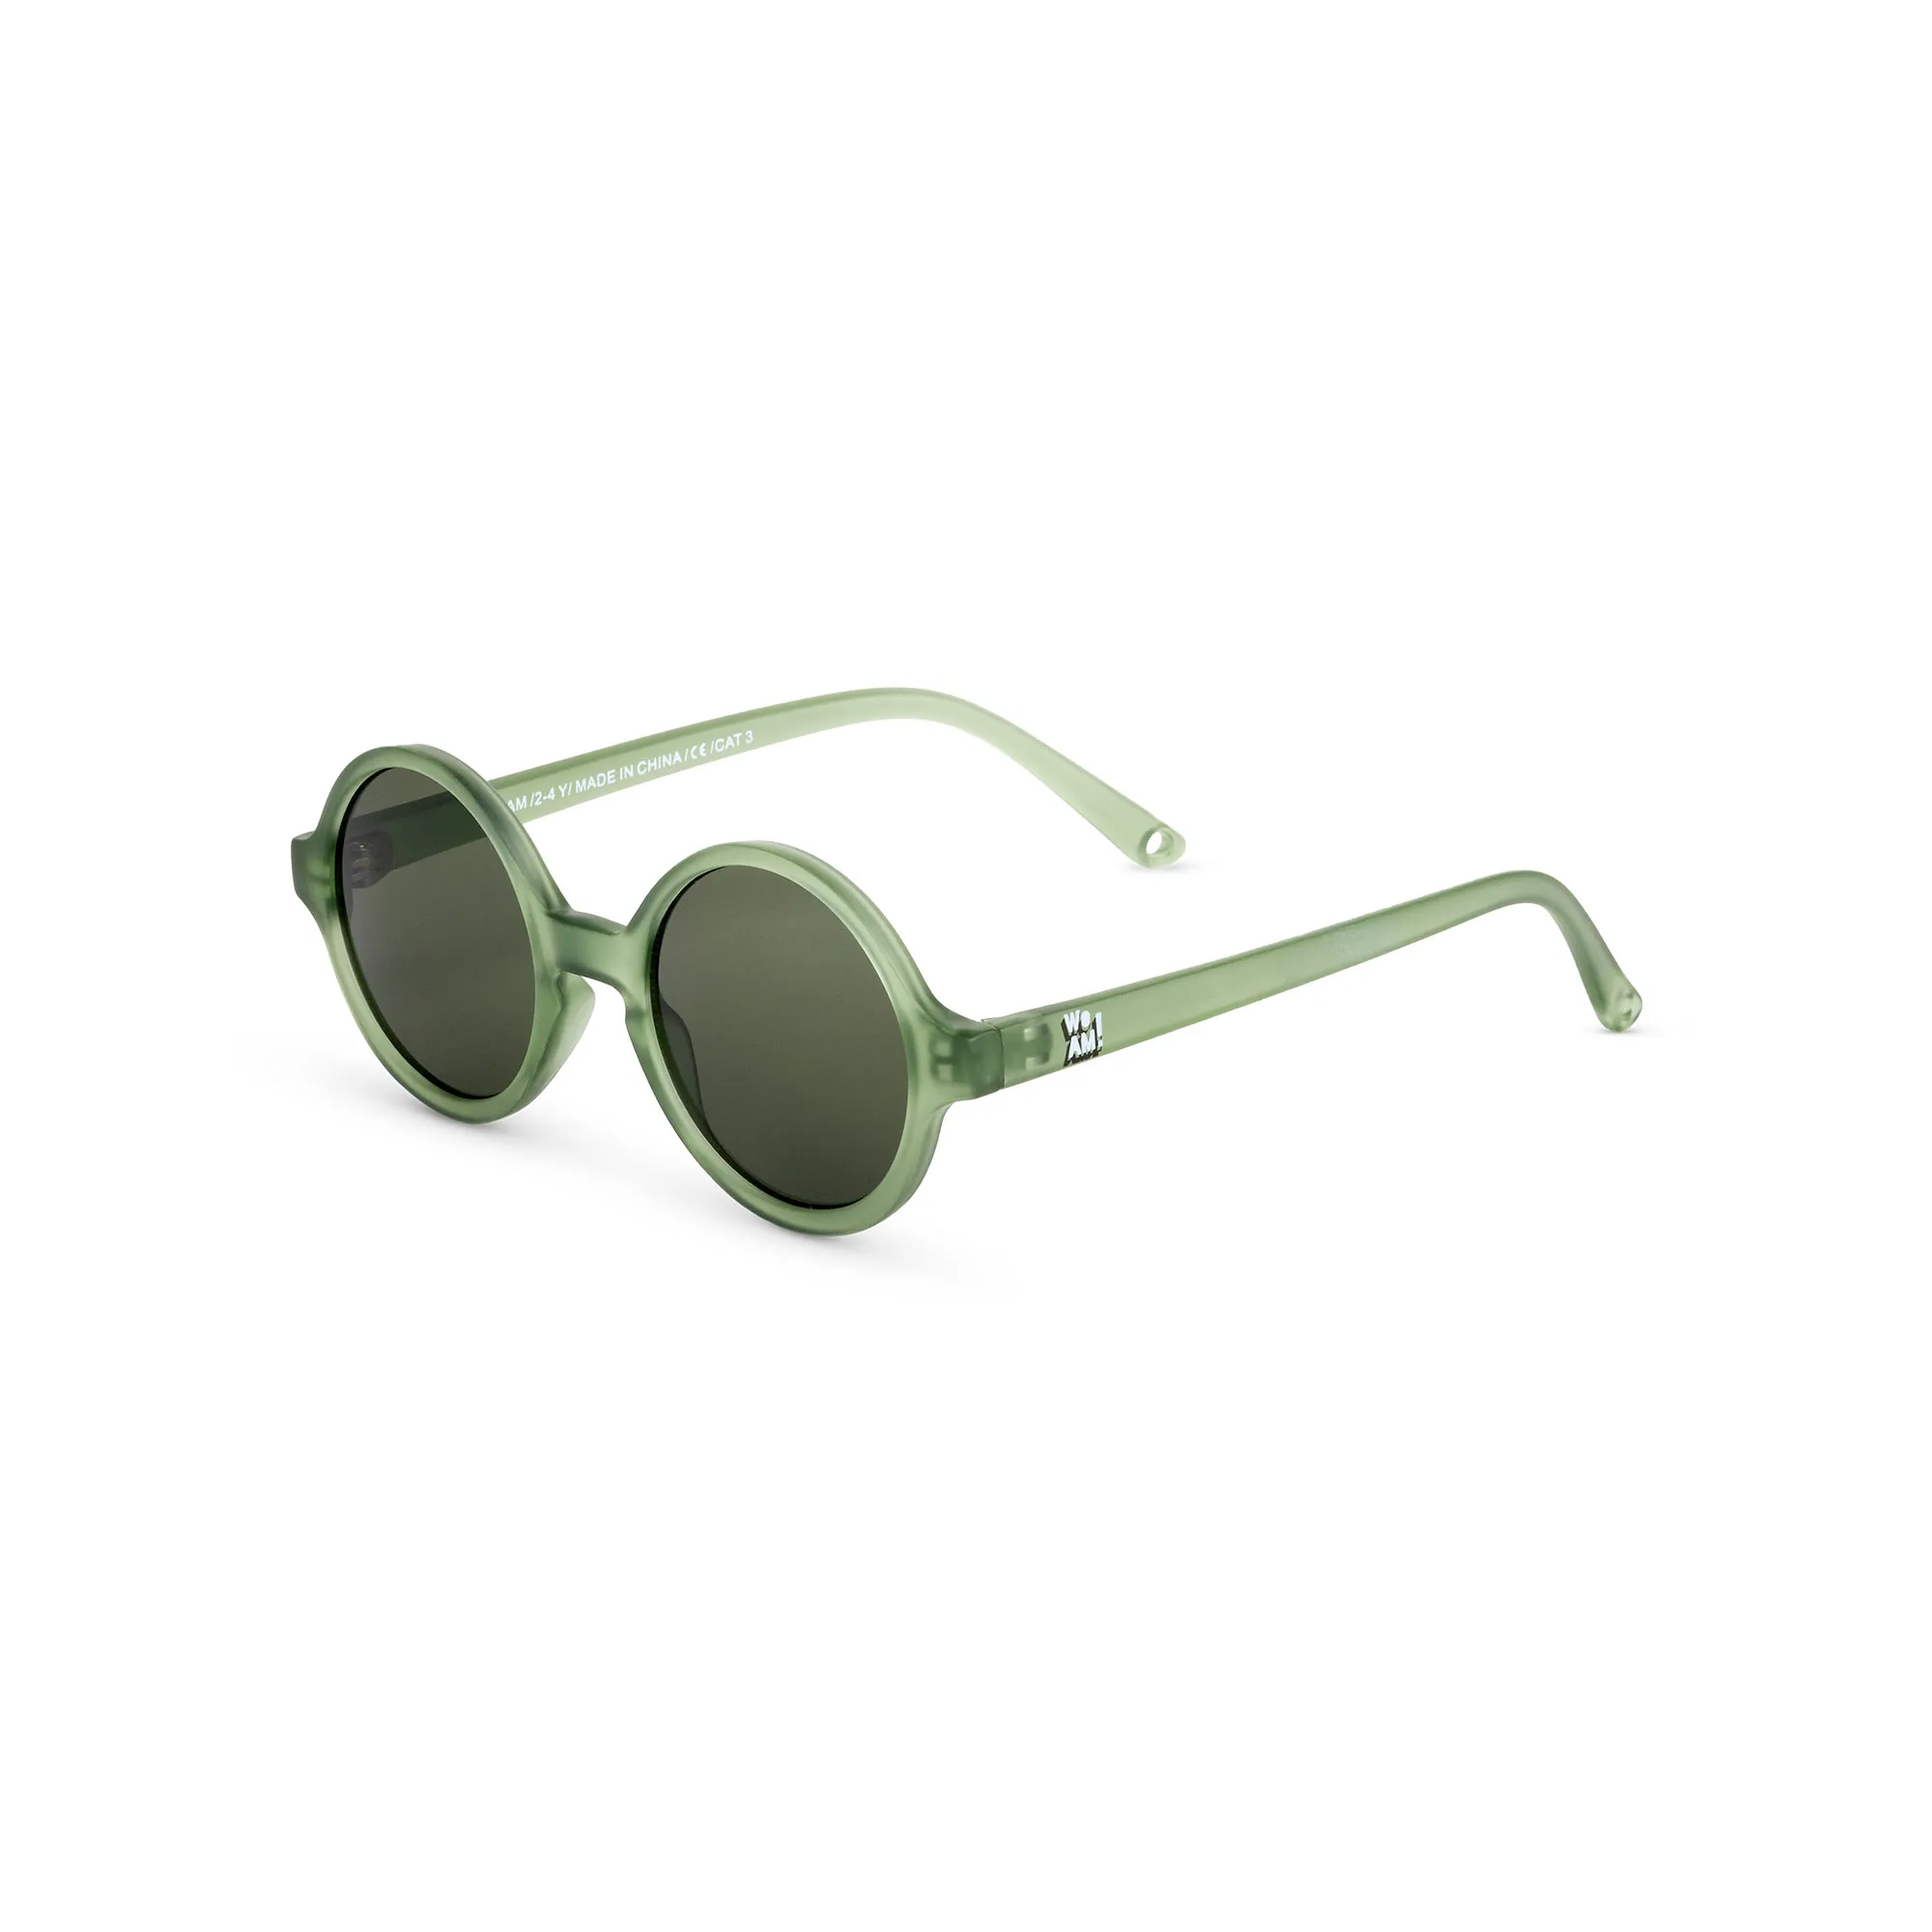 WOAM slnečné okuliare 4-6 rokov - Bottle Green 1×1 ks, detské slnečné okuliare